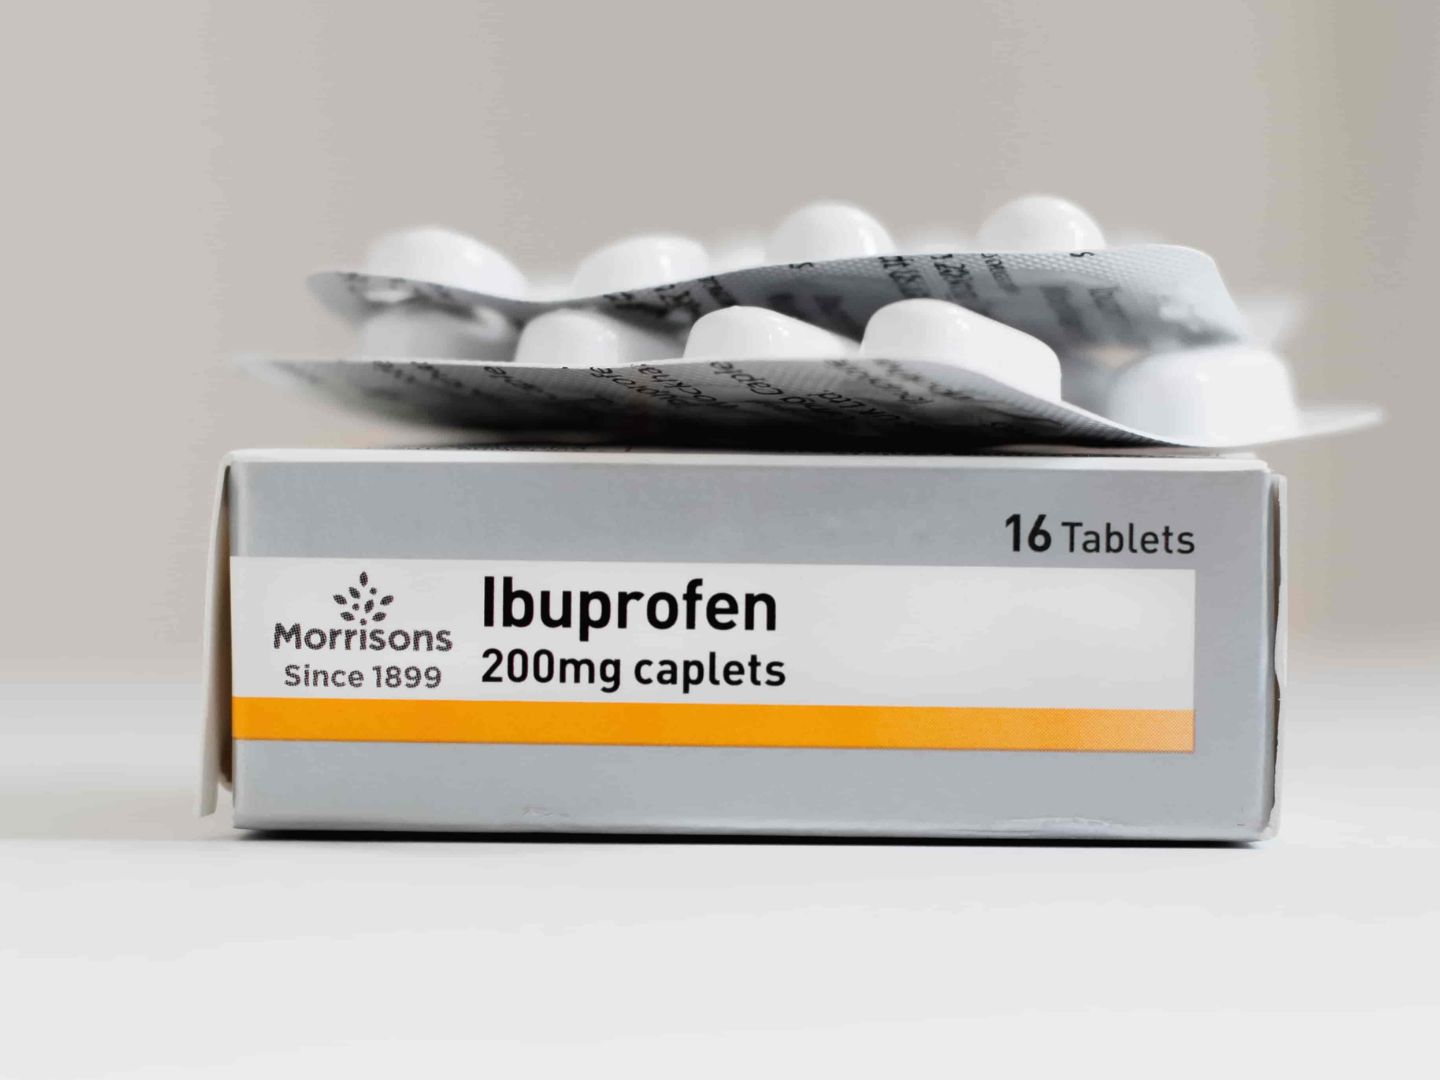 Tablete za snižavanje povišene tjelesne temperature Ibuprofen u kartonskom pakiranju